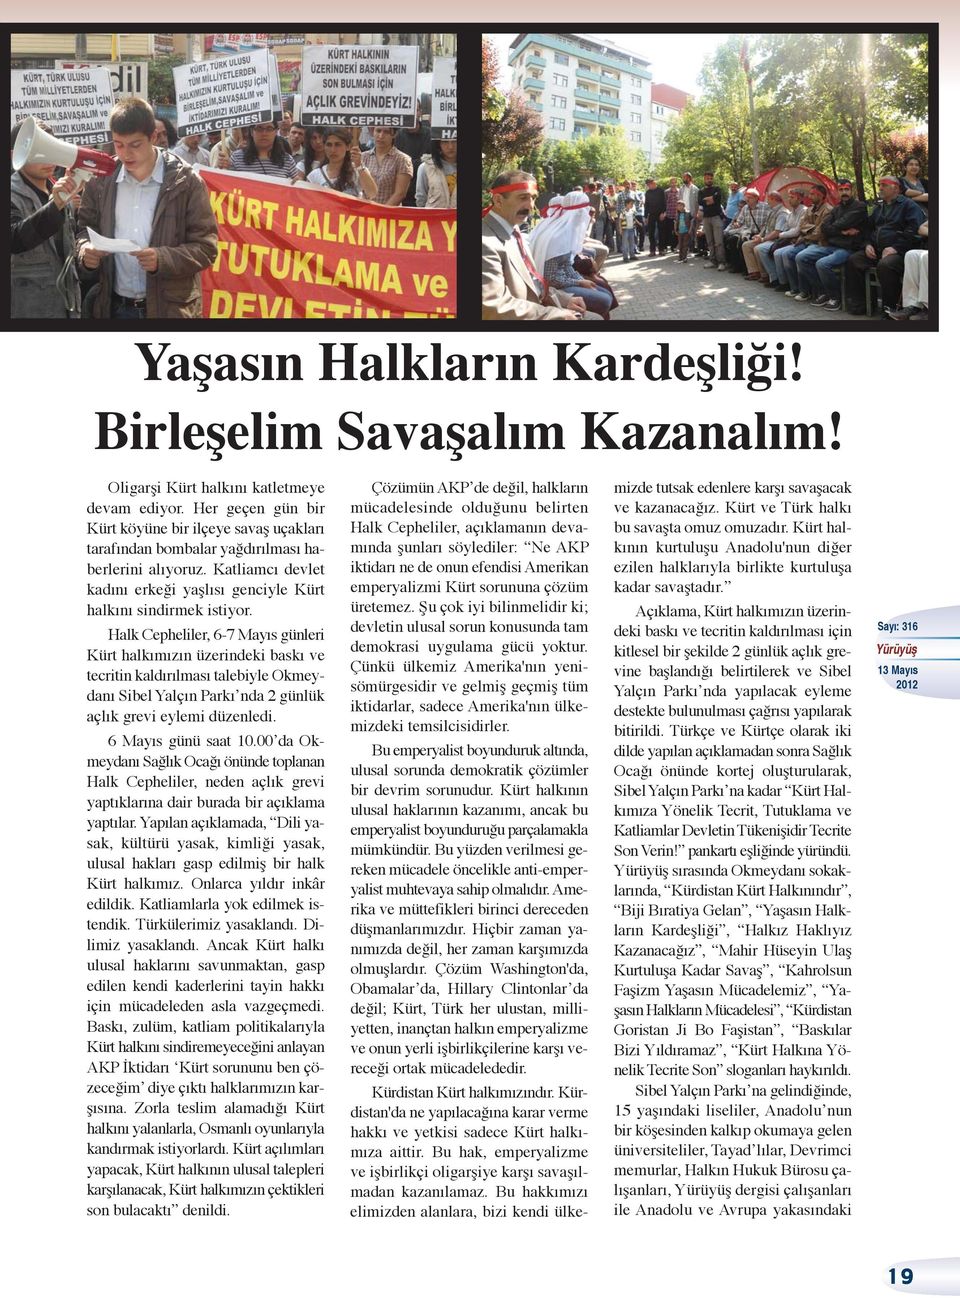 Halk Cepheliler, 6-7 Mayıs günleri Kürt halkımızın üzerindeki baskı ve tecritin kaldırılması talebiyle Okmeydanı Sibel Yalçın Parkı nda 2 günlük açlık grevi eylemi düzenledi. 6 Mayıs günü saat 10.